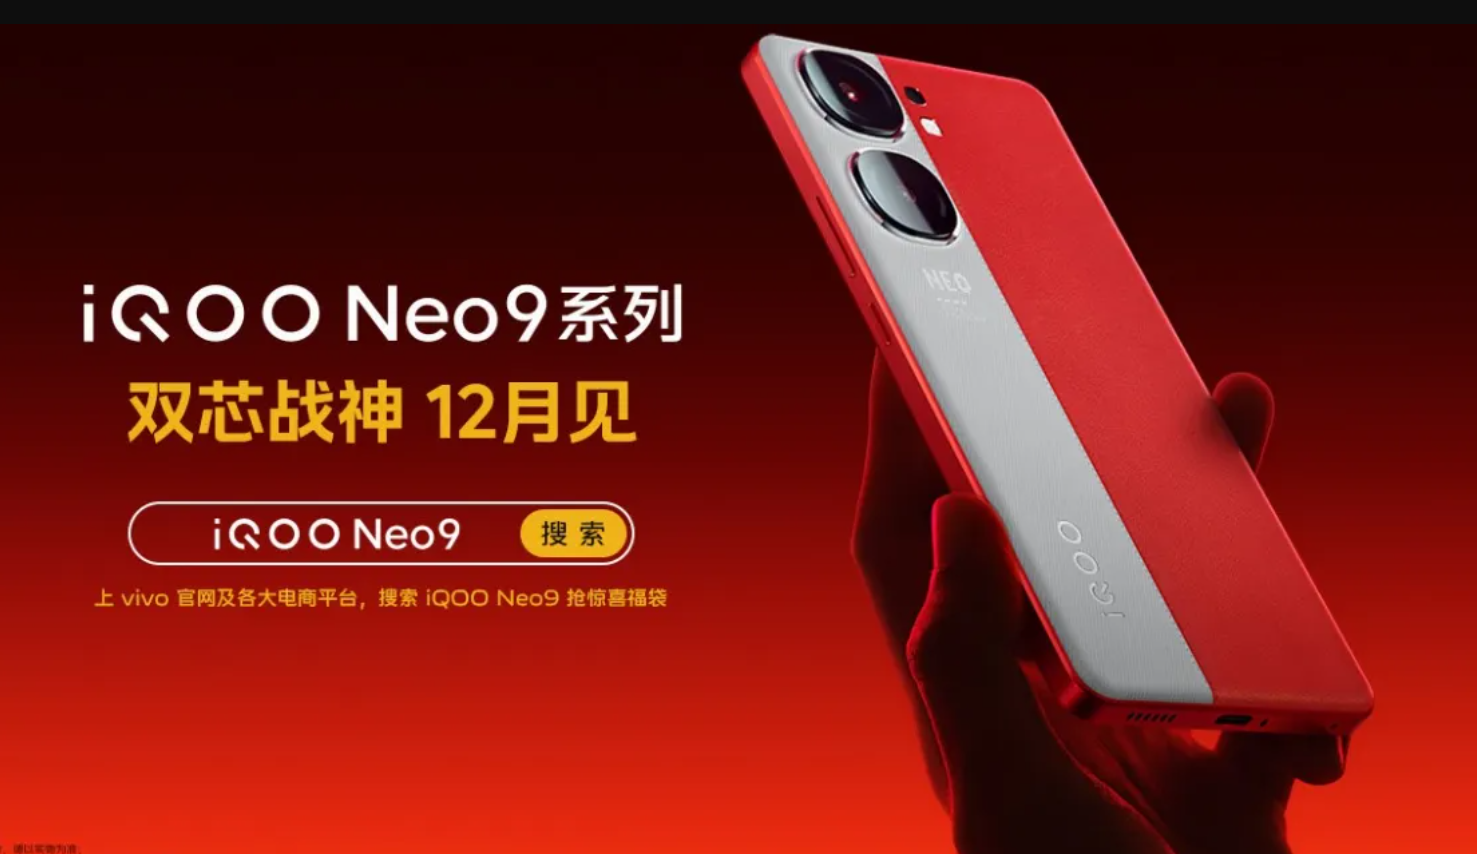 iQOO Neo 9: Expected Specs